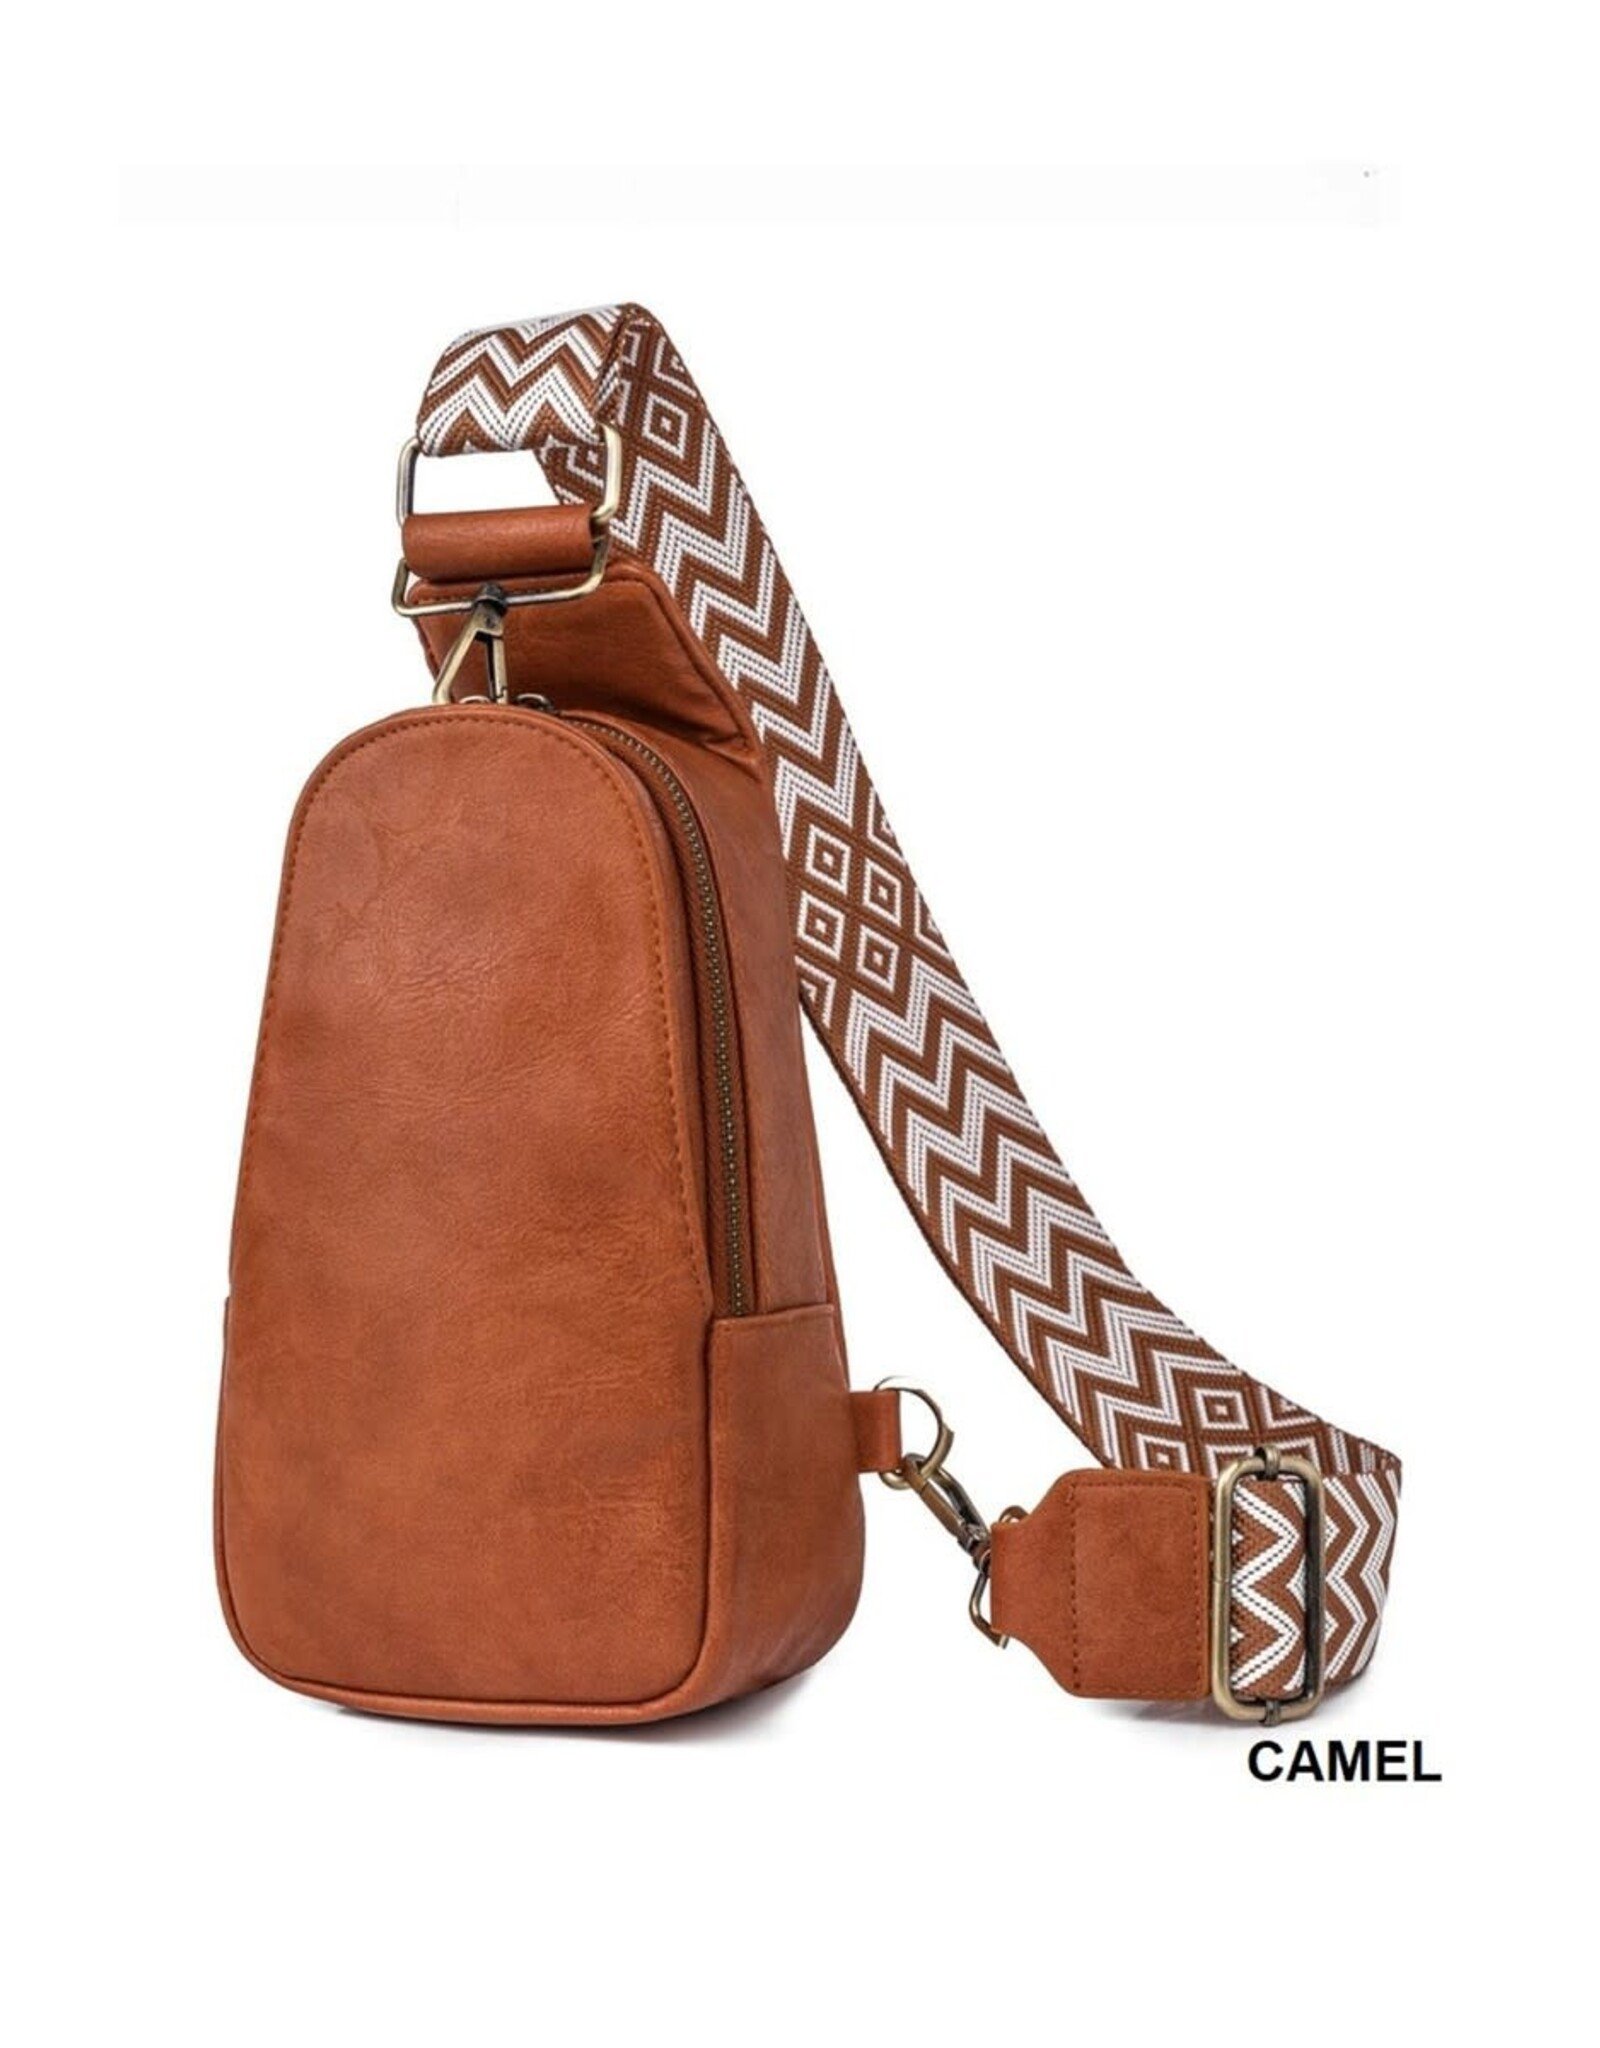 Camel Vegan Leather Sling Bag